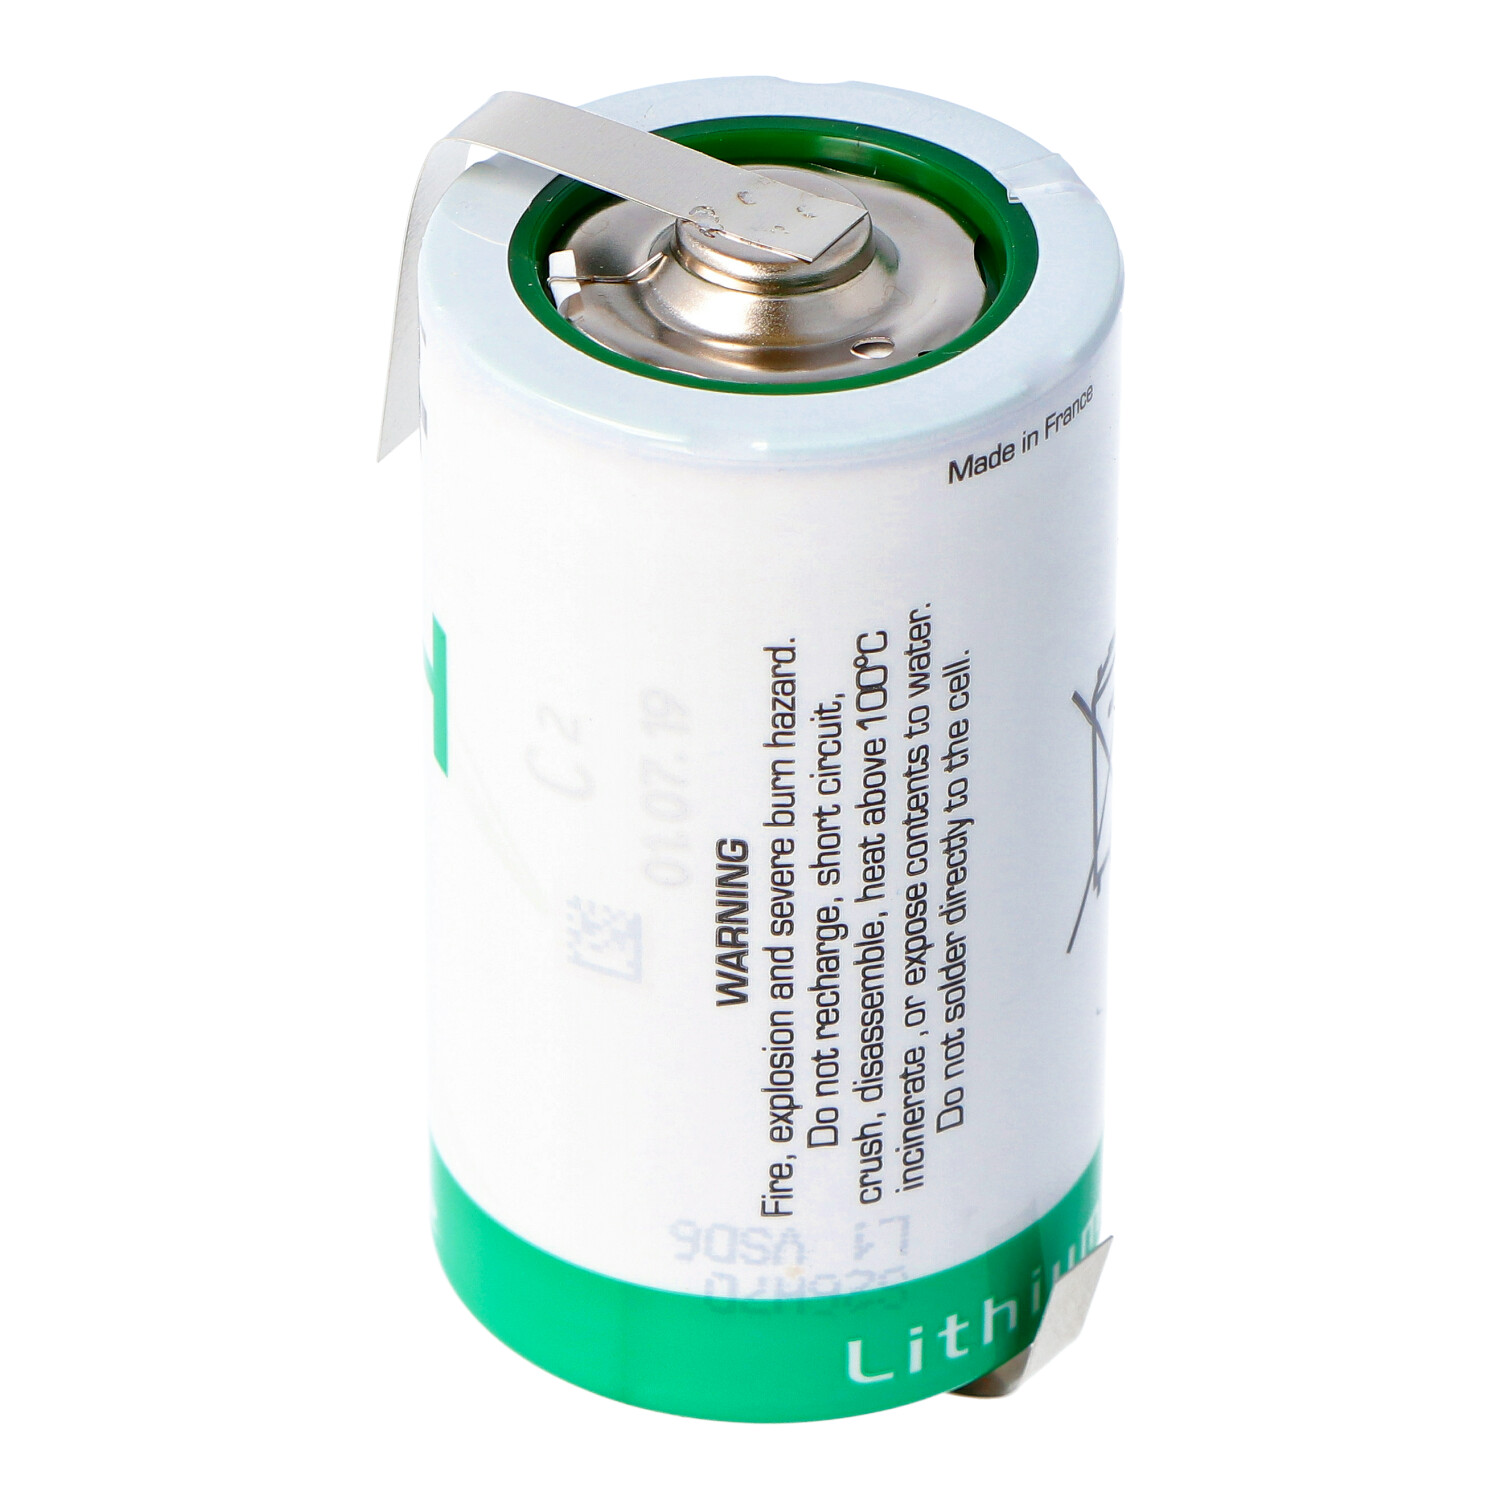 SAFT LSH 20 Lithium Batterie 3.6V Primary LSH20 mit Z-Lötfahnen